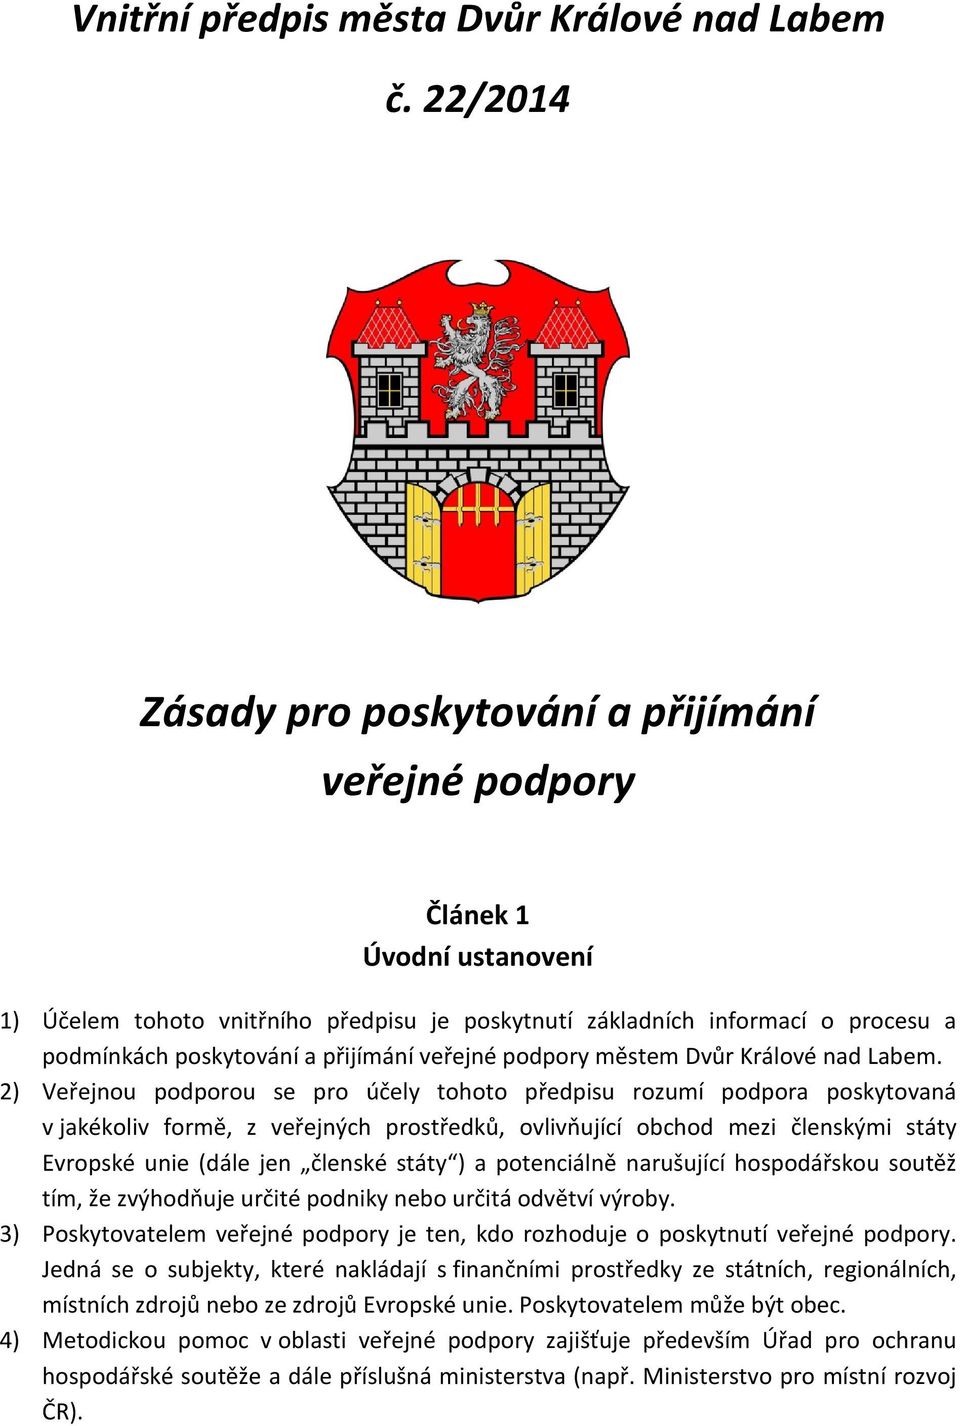 přijímání veřejné podpory městem Dvůr Králové nad Labem.